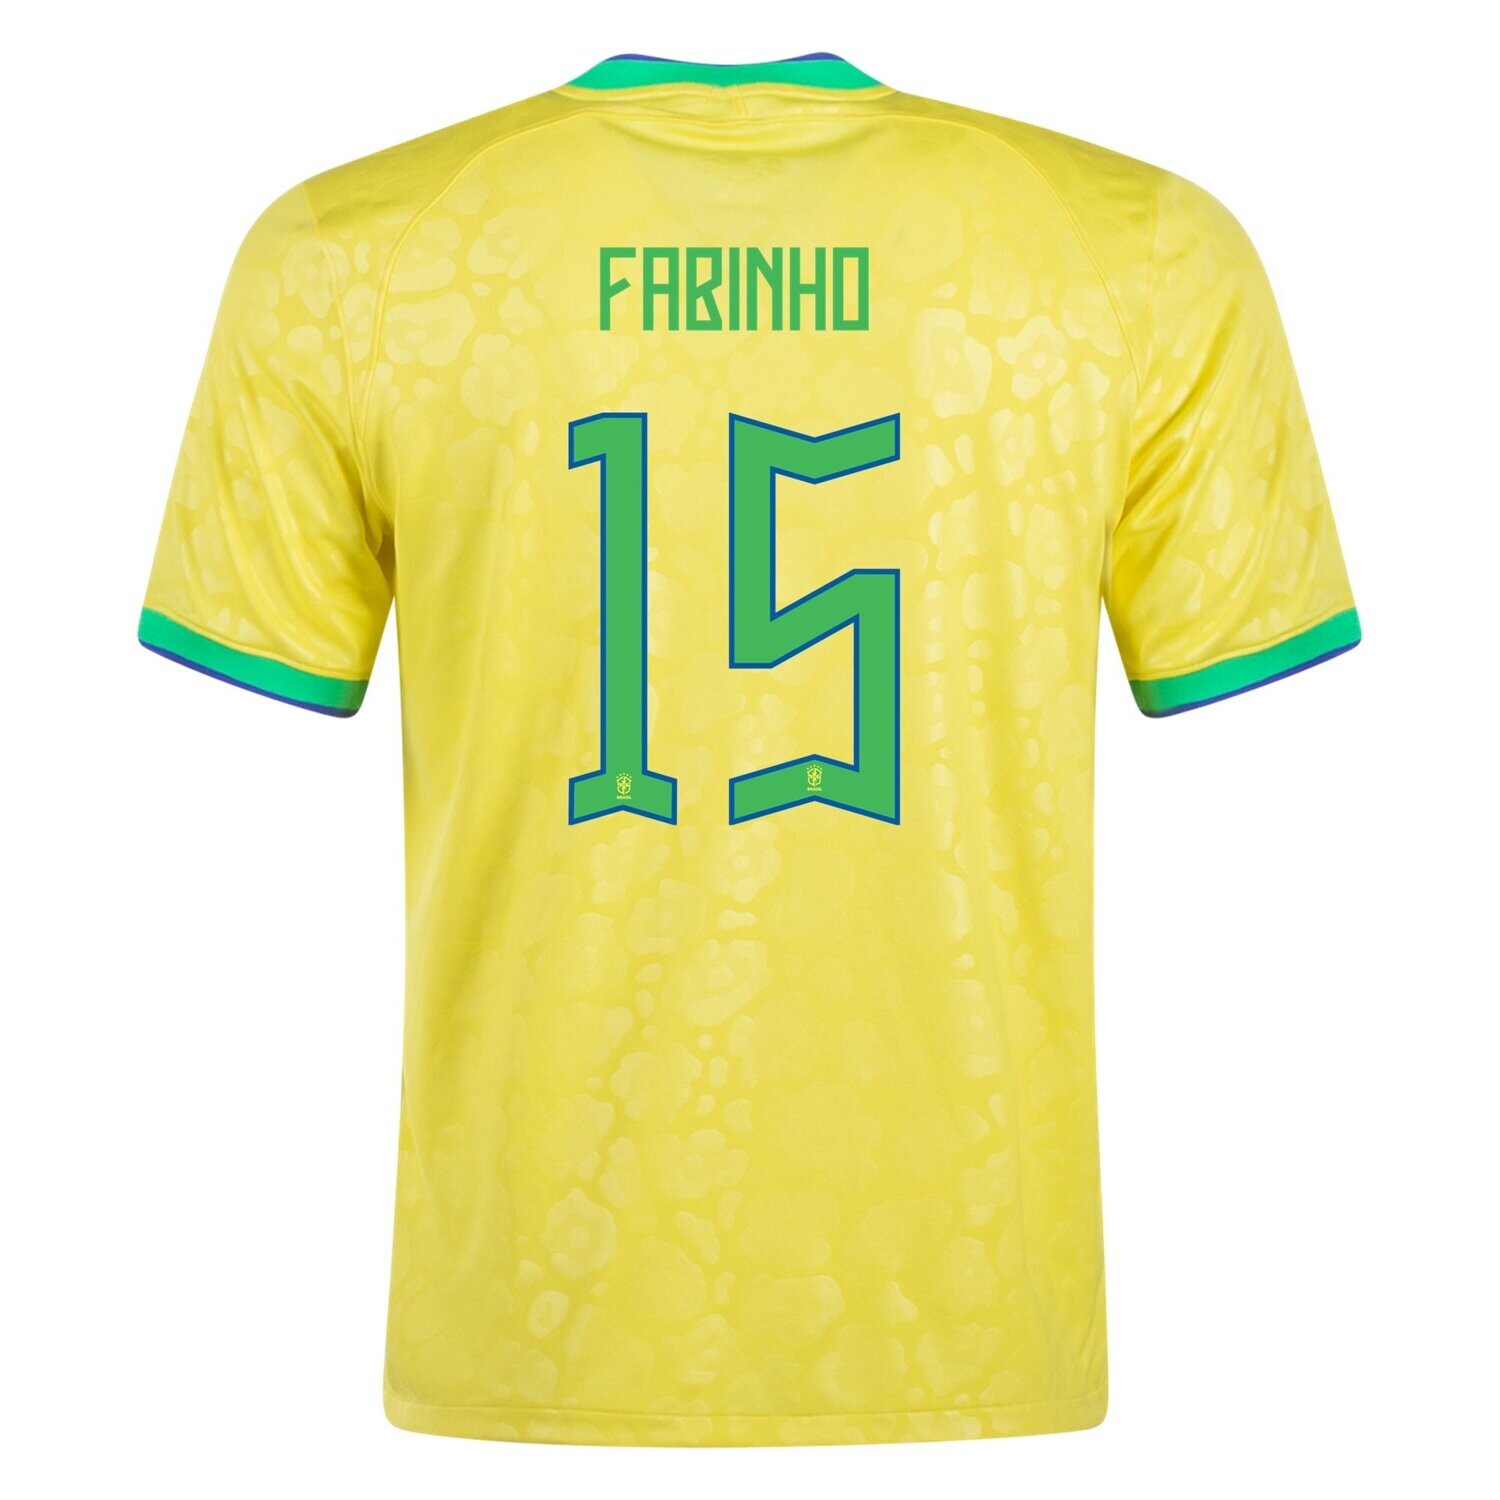 Fabinho Brazil World Cup Home Soccer Jersey 2022